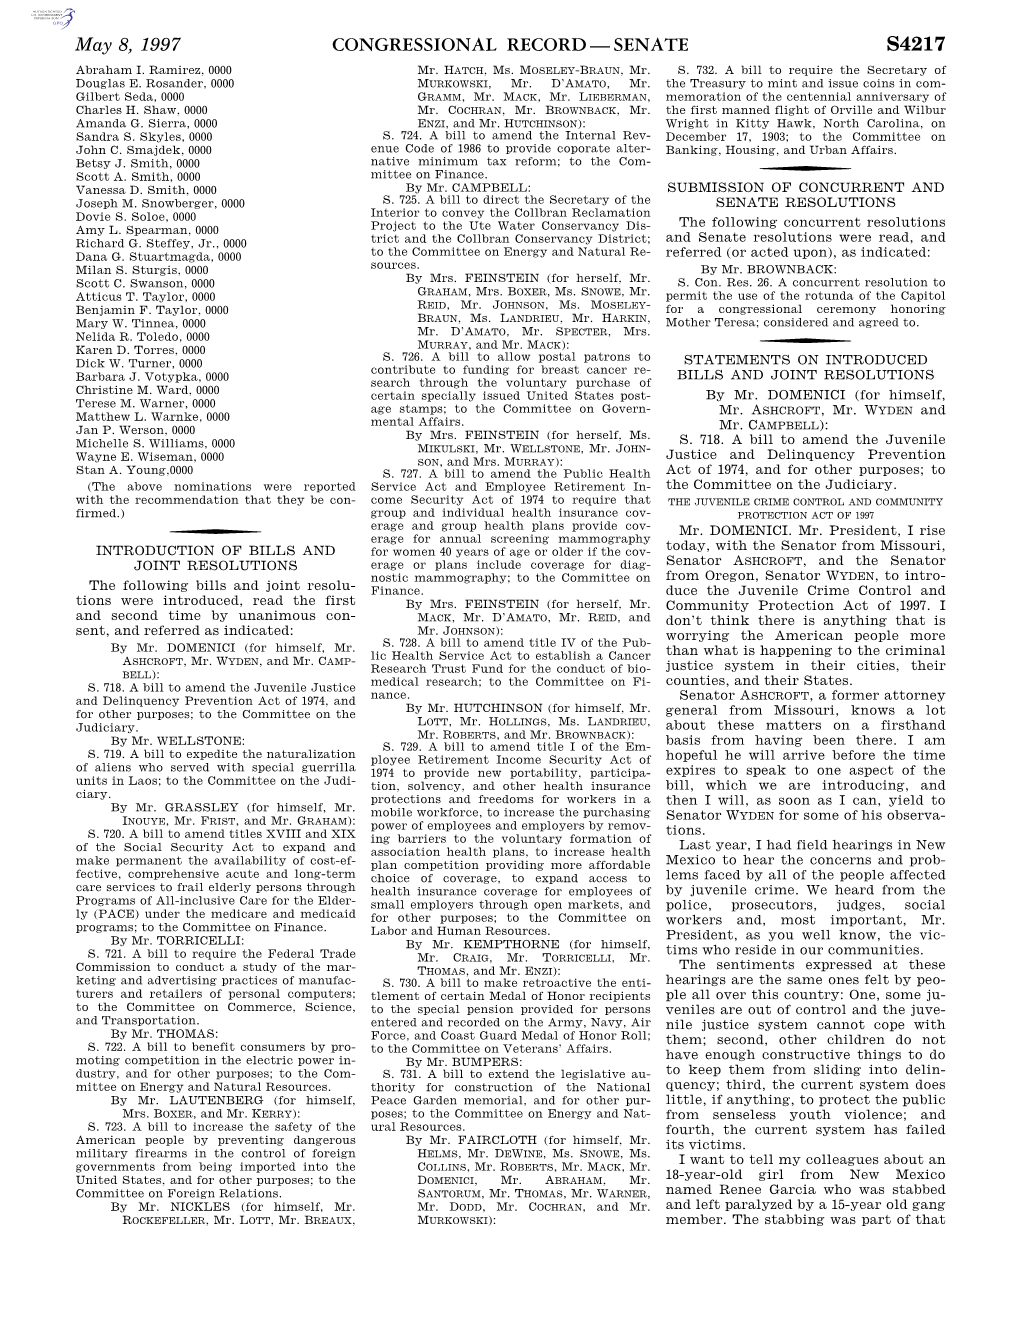 Congressional Record—Senate S4217